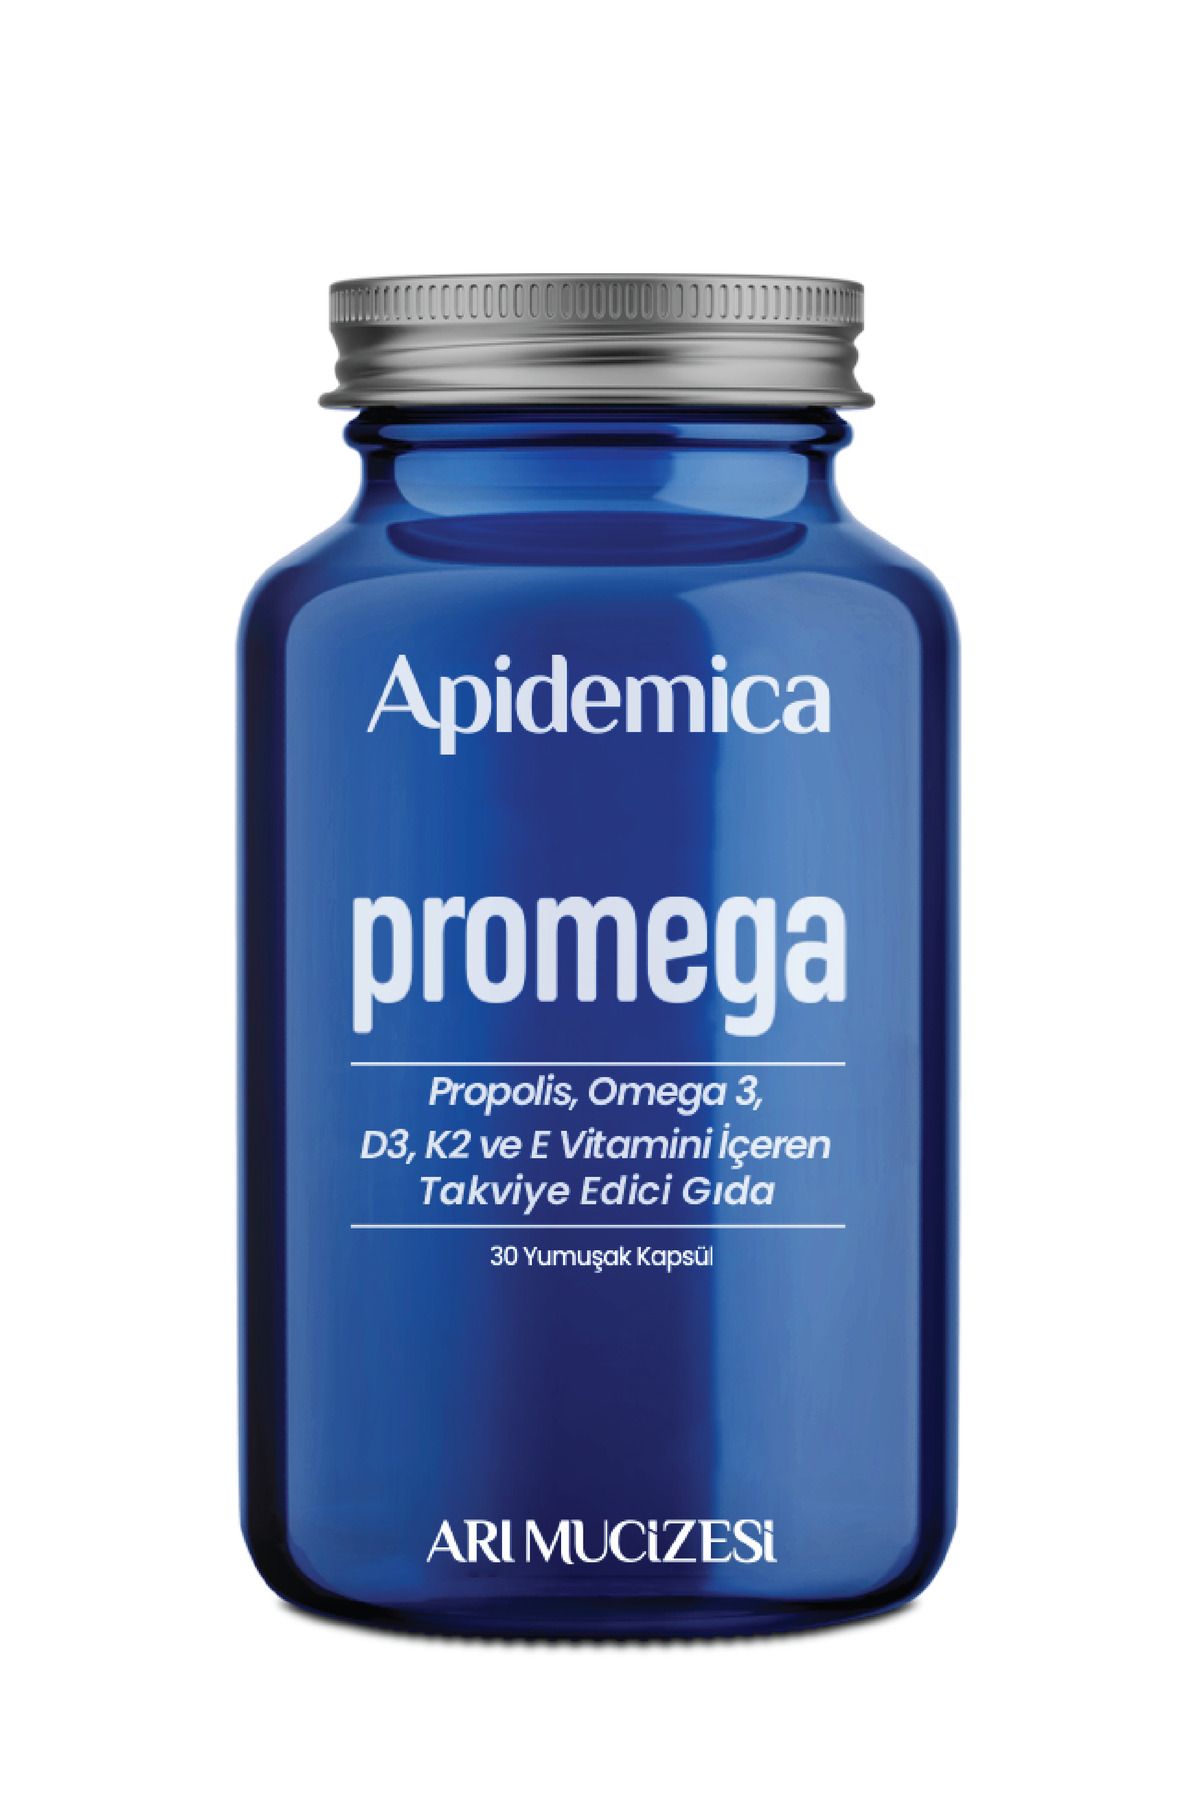 Arı Mucizesi Apidemica Promega ( Propolis, Omega 3, Vitamin D3, K2, E)